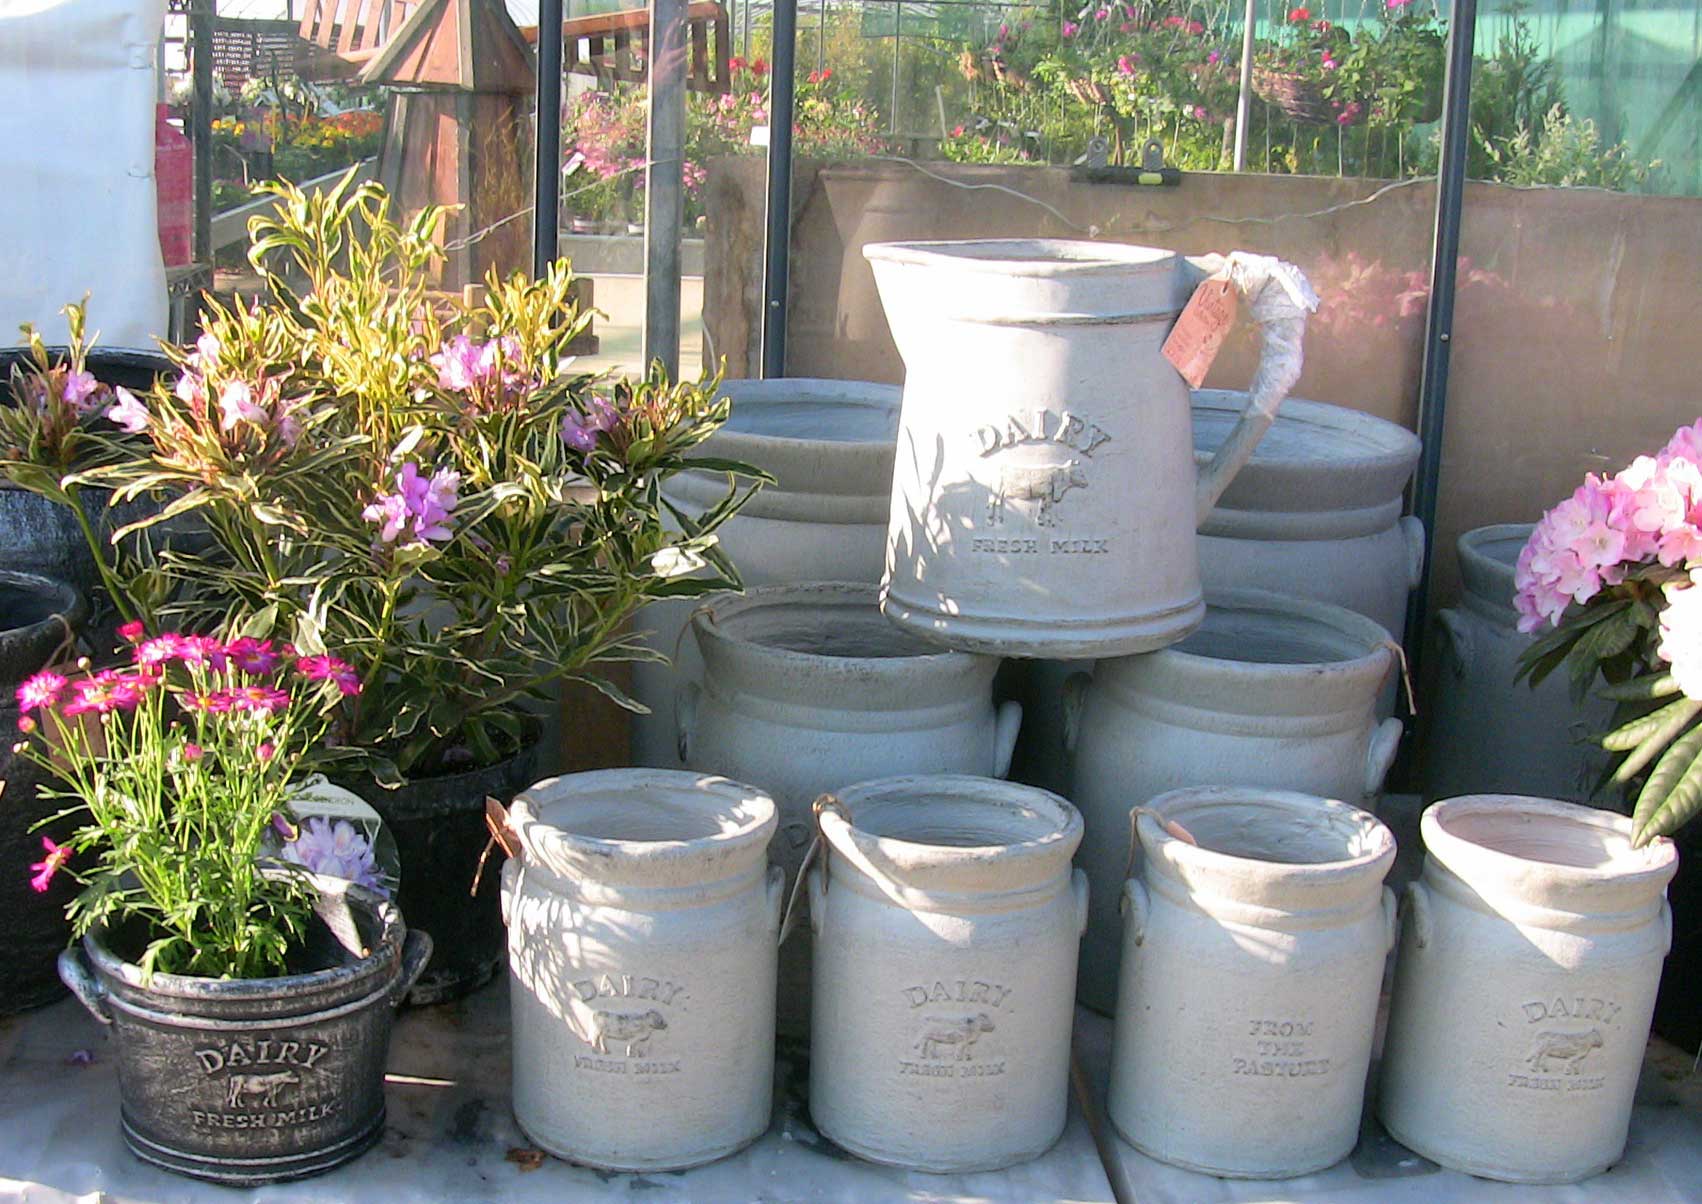 Plant Pots at Retford Garden Centre